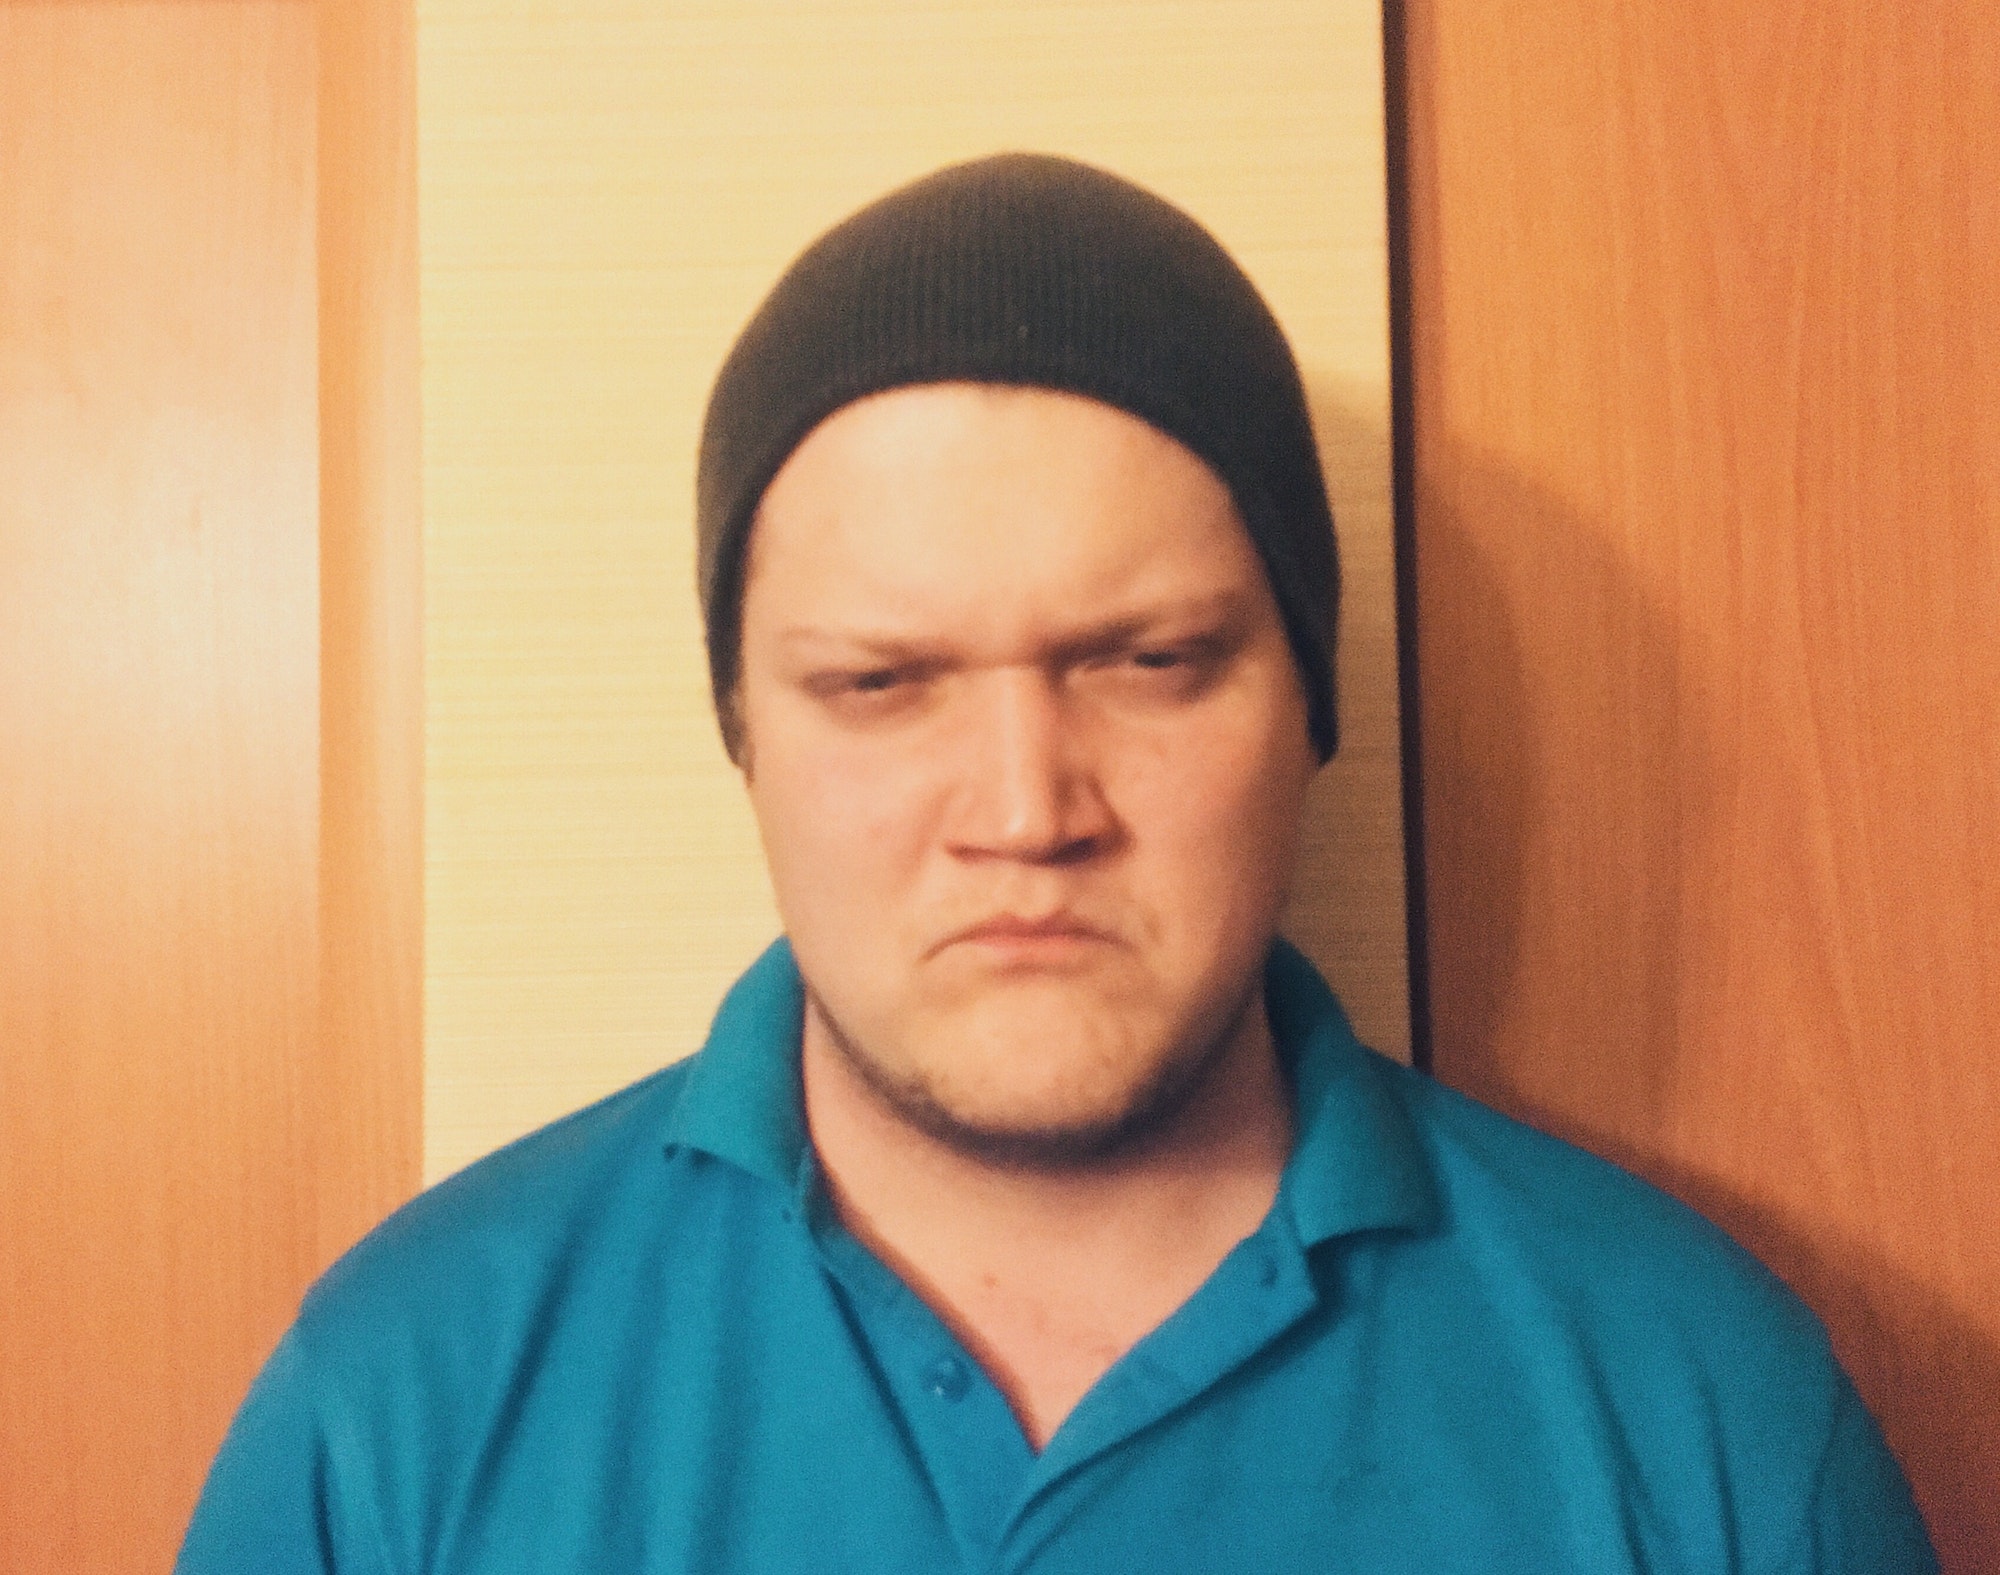 Sad face man portrait